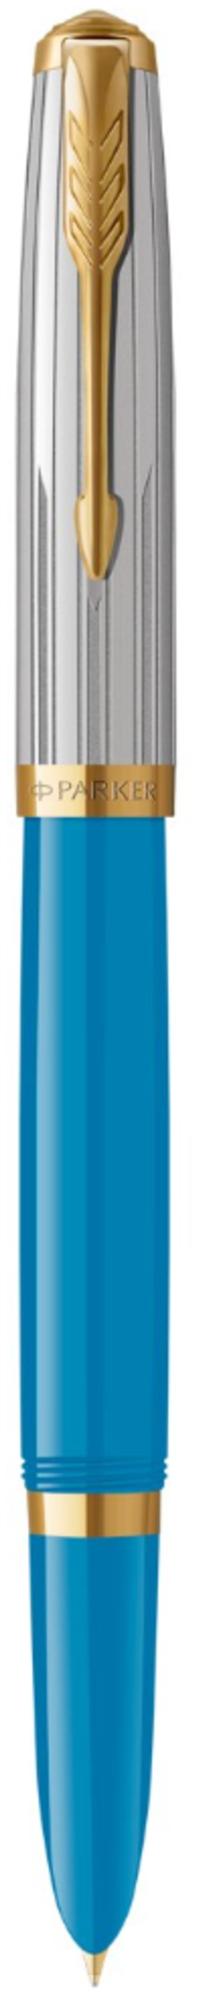 Перьевая ручка Parker 51 Premium Turquoise GT стержень: Fblk, Blue, в подарочной упаковке